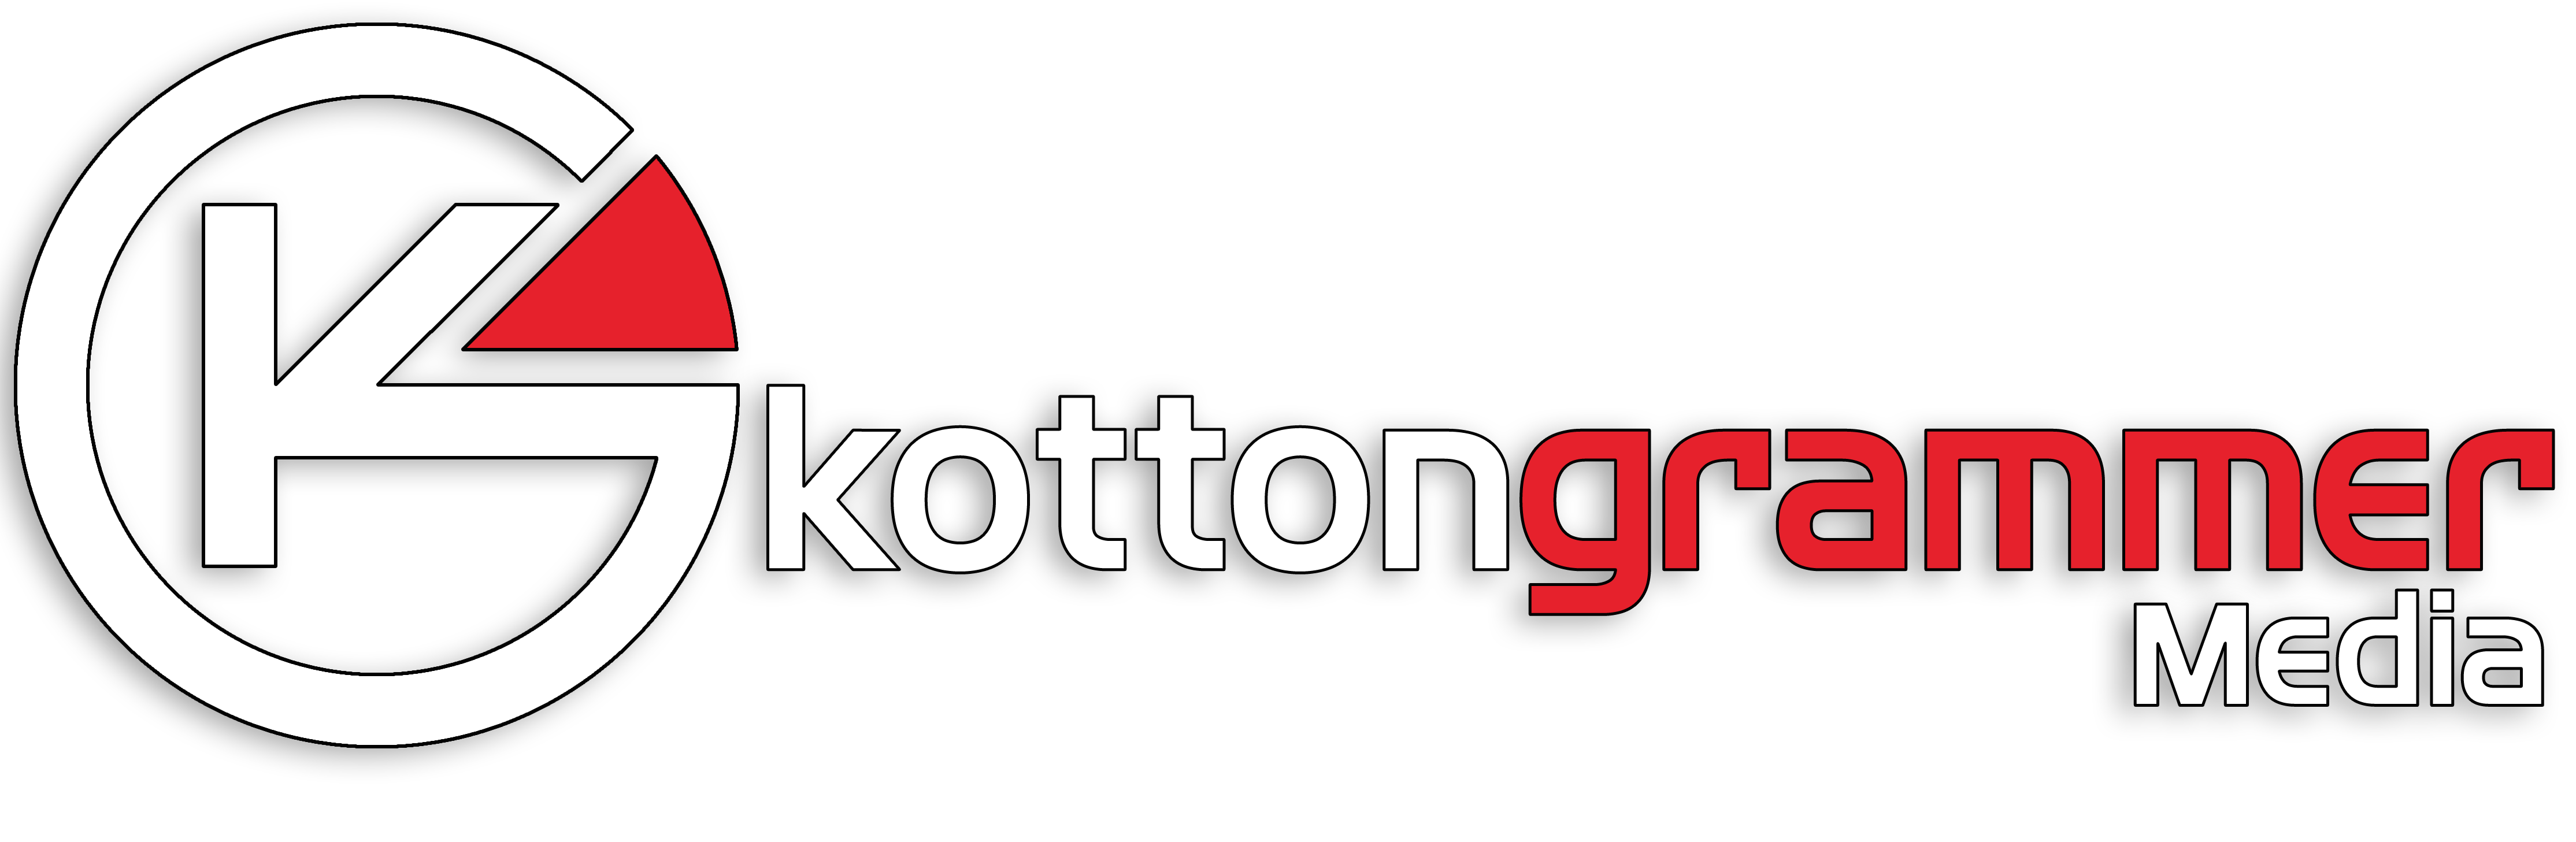 Company logo of Kotton Grammer Media